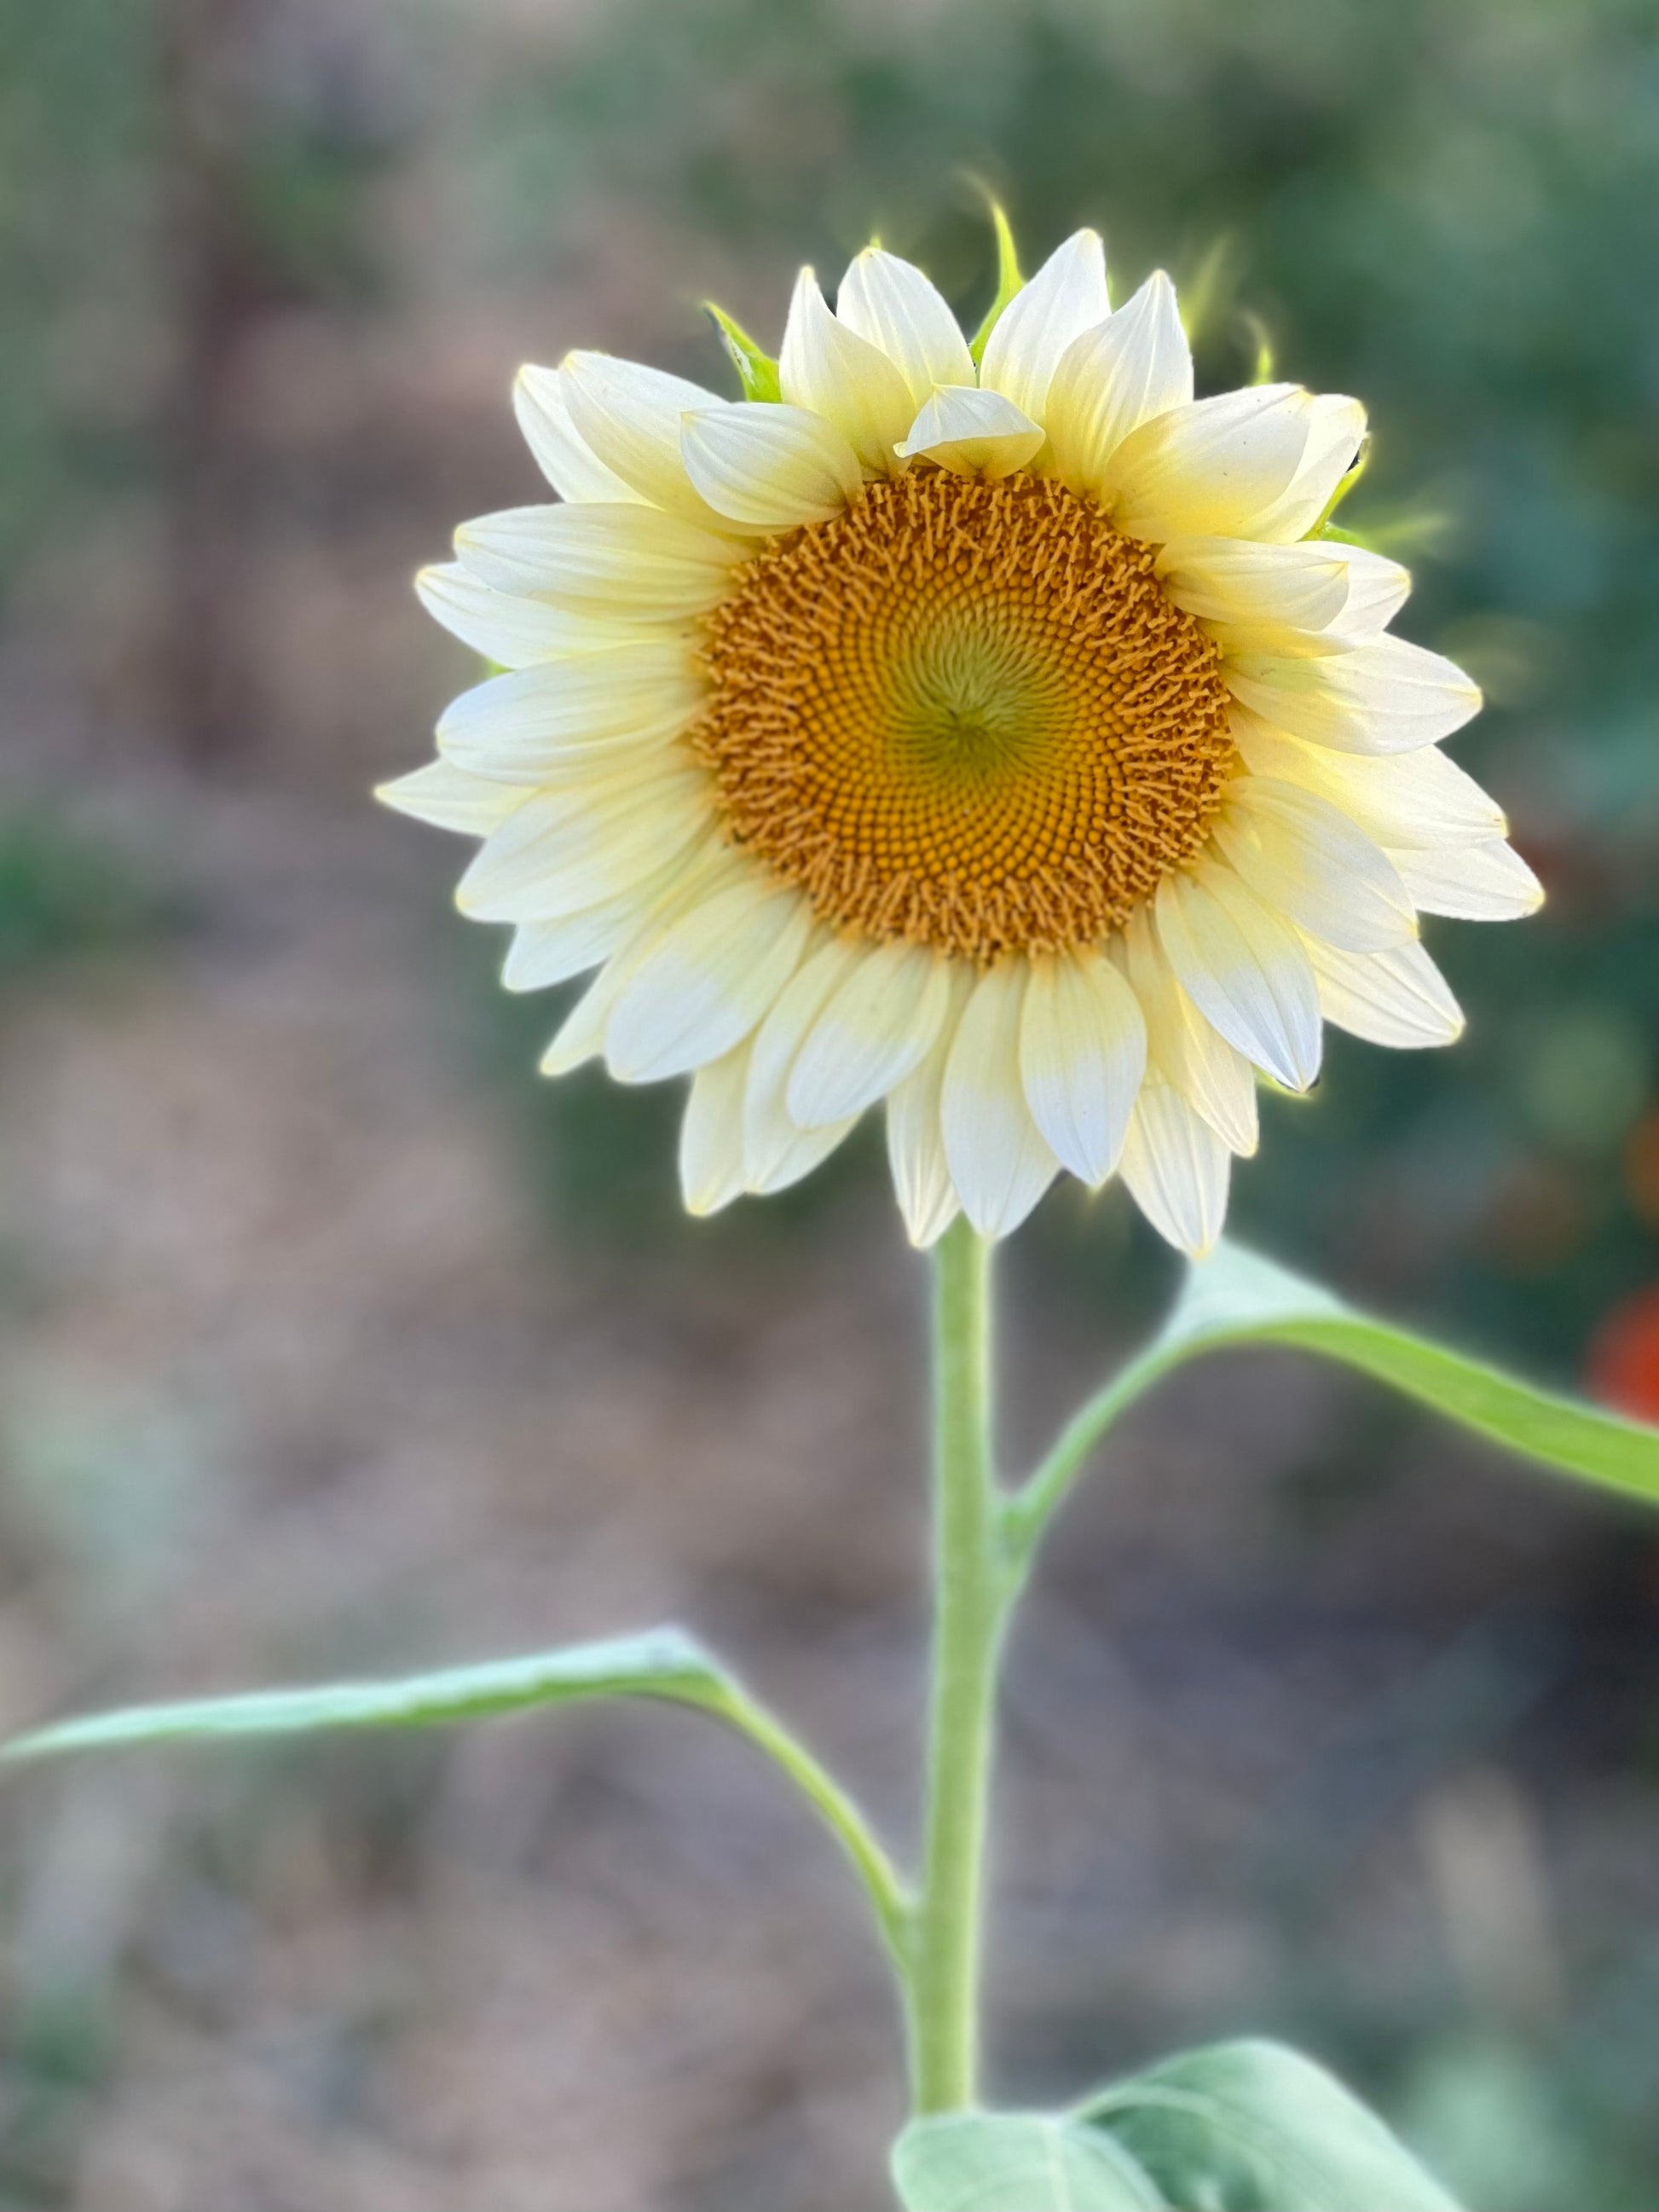 White Lite sunflower, great sunflower for cut flower gardens